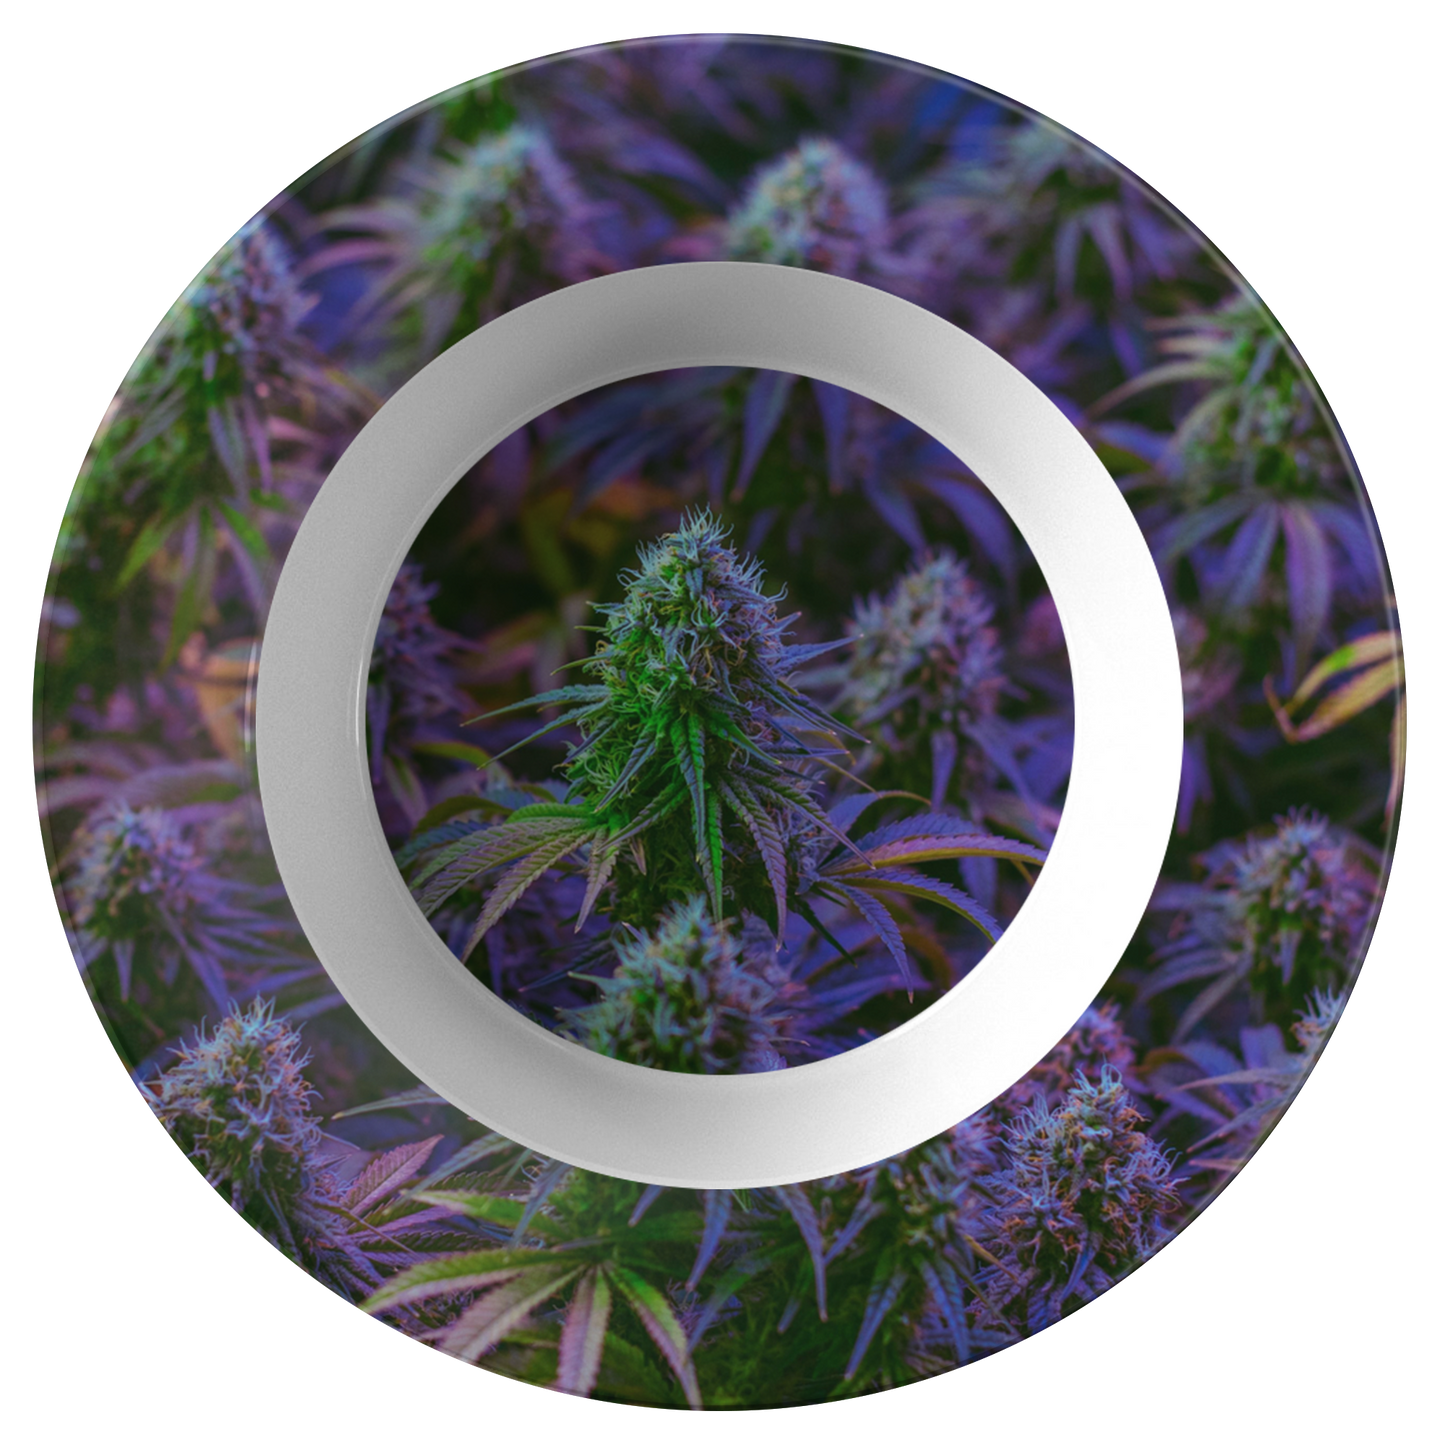 The Purple Cannabis Bowl